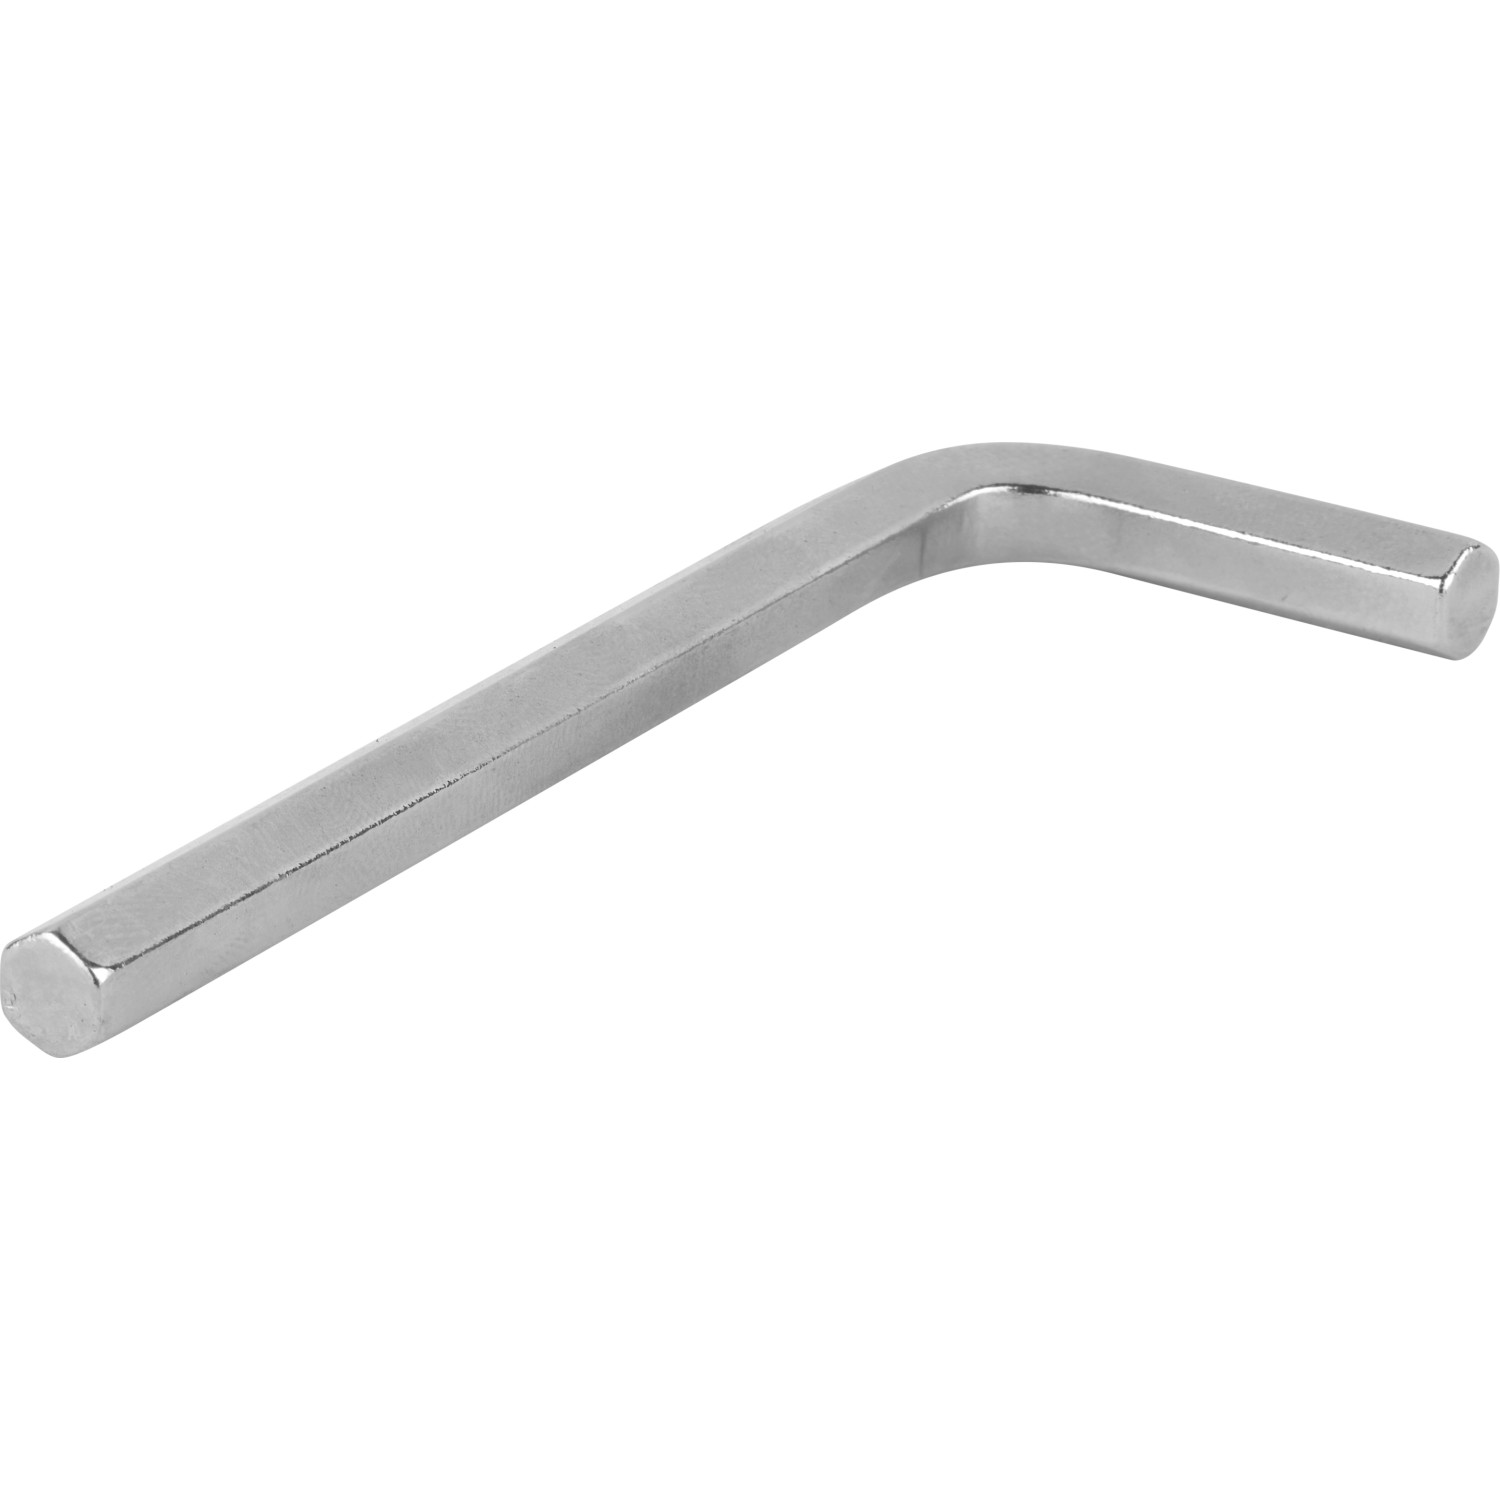 Sechskantschlüssel 6 mm für Verbinder von Stahlrohr Ø 2,7 cm